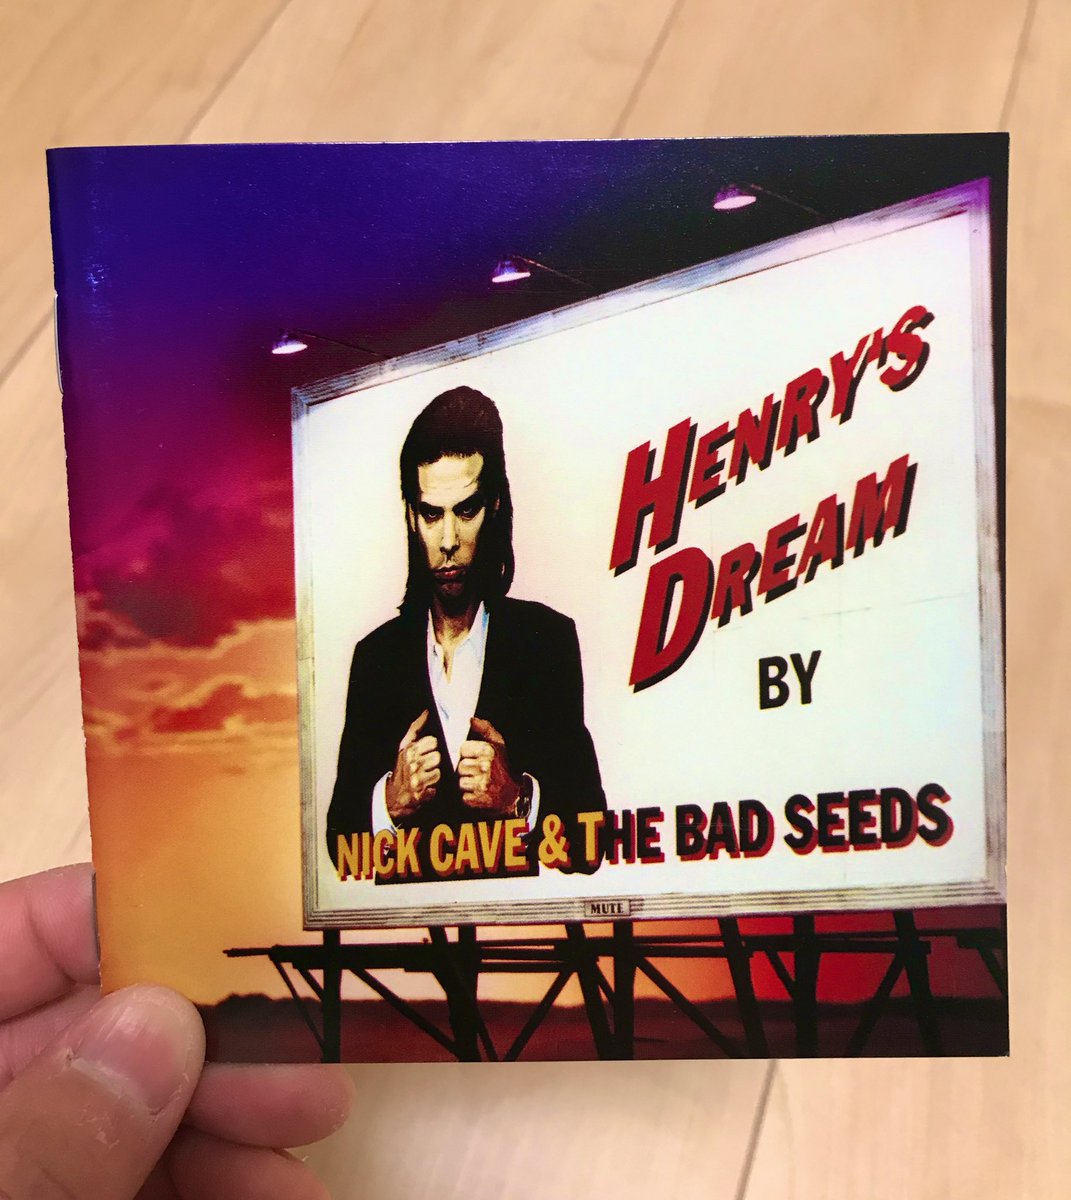 朝歌

Nick Cave & The Bad Seeds 
Straight To You 
youtu.be/CYbOHXMtelU @YouTube

#NickCaveandTheBadSeeds
#StraightToYou
#金杯ですね

good morning🎶